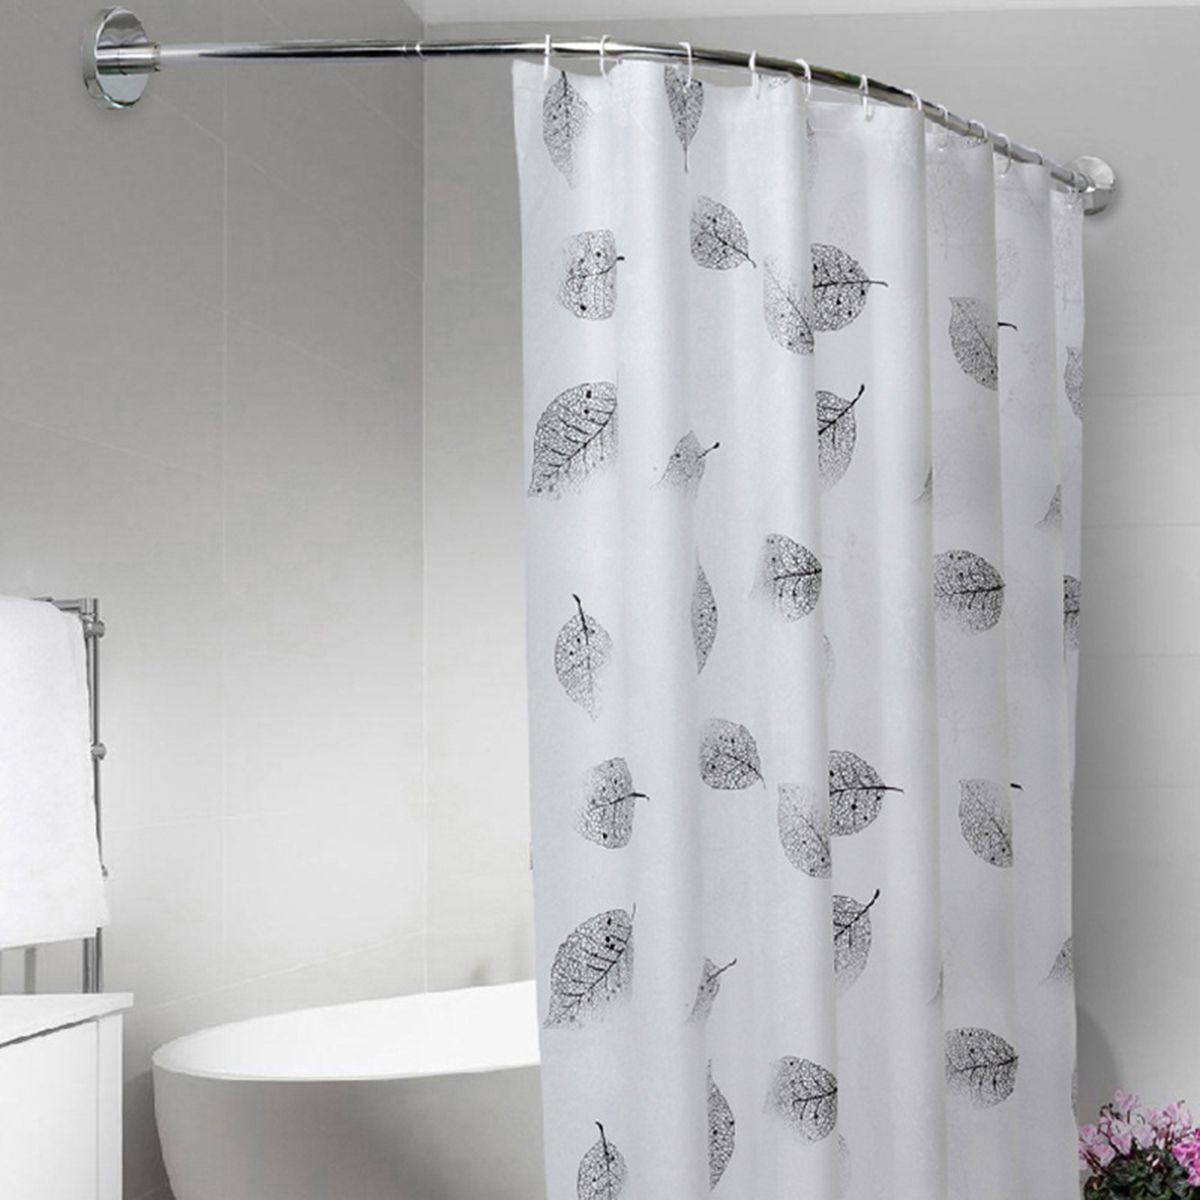 Adjustable-Stainless-Steel-Shower-Curtain-Rod-Curved-Pole-Bathtub-Hooks-1591216